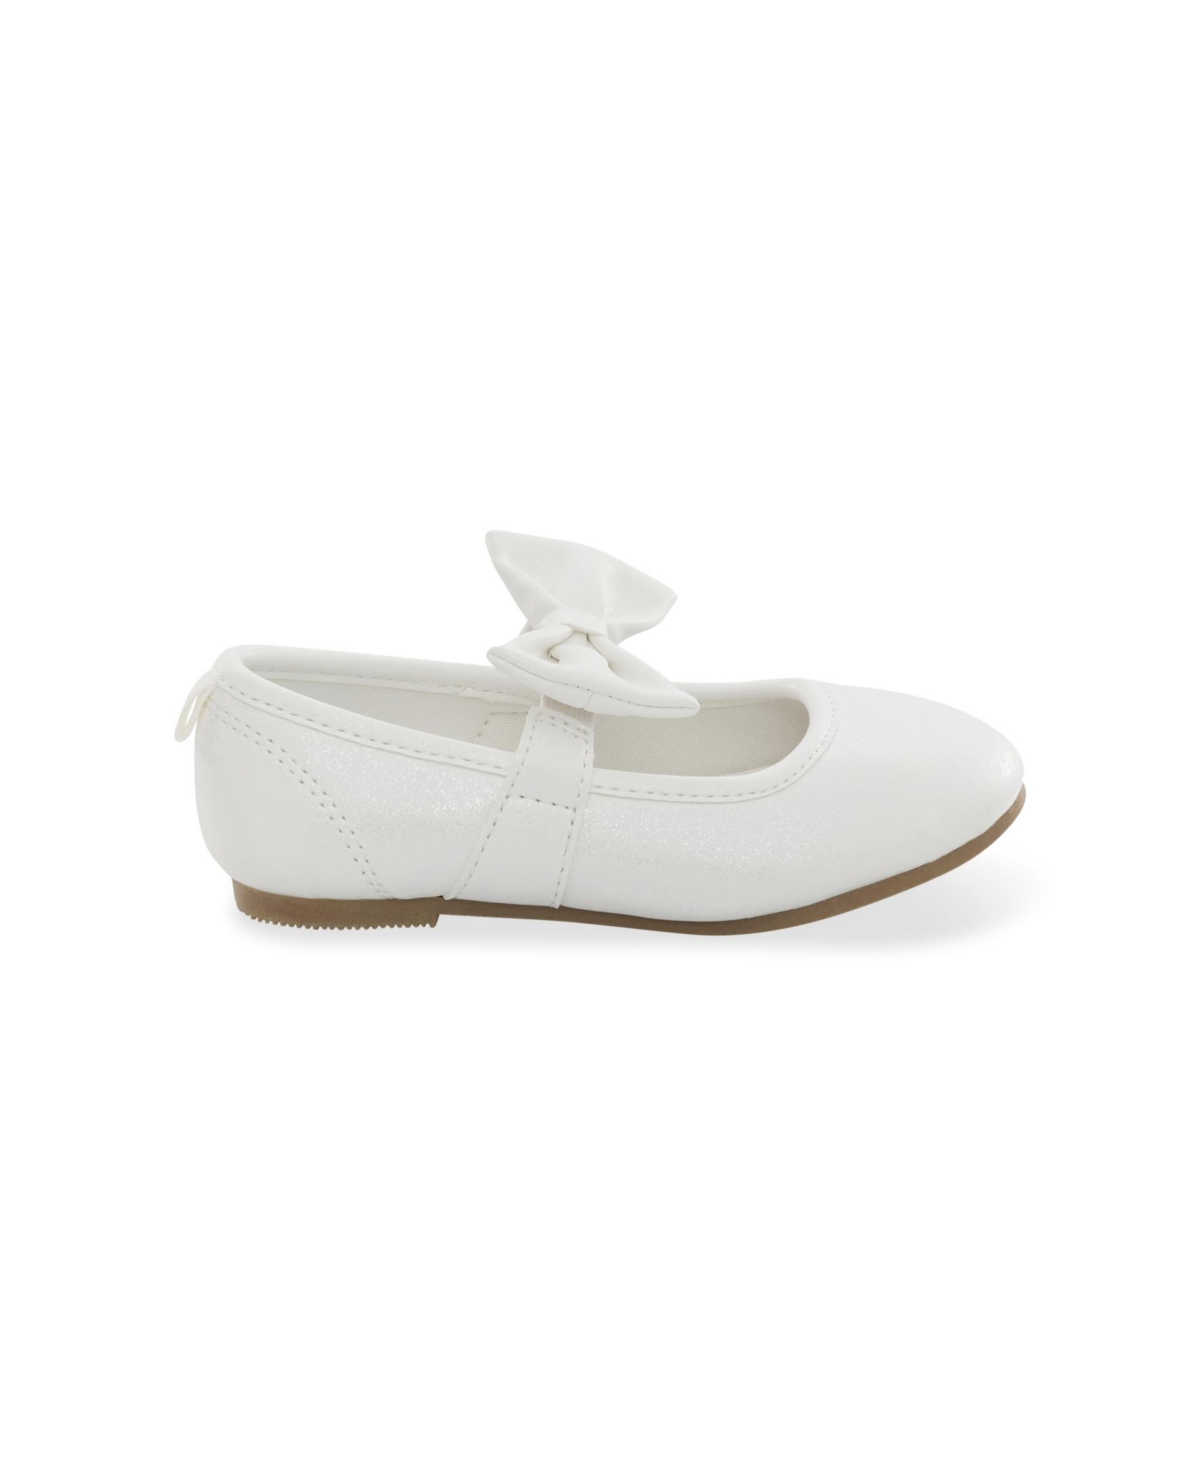 Shop Carter's Little Girls Classy Slip On White Shoe